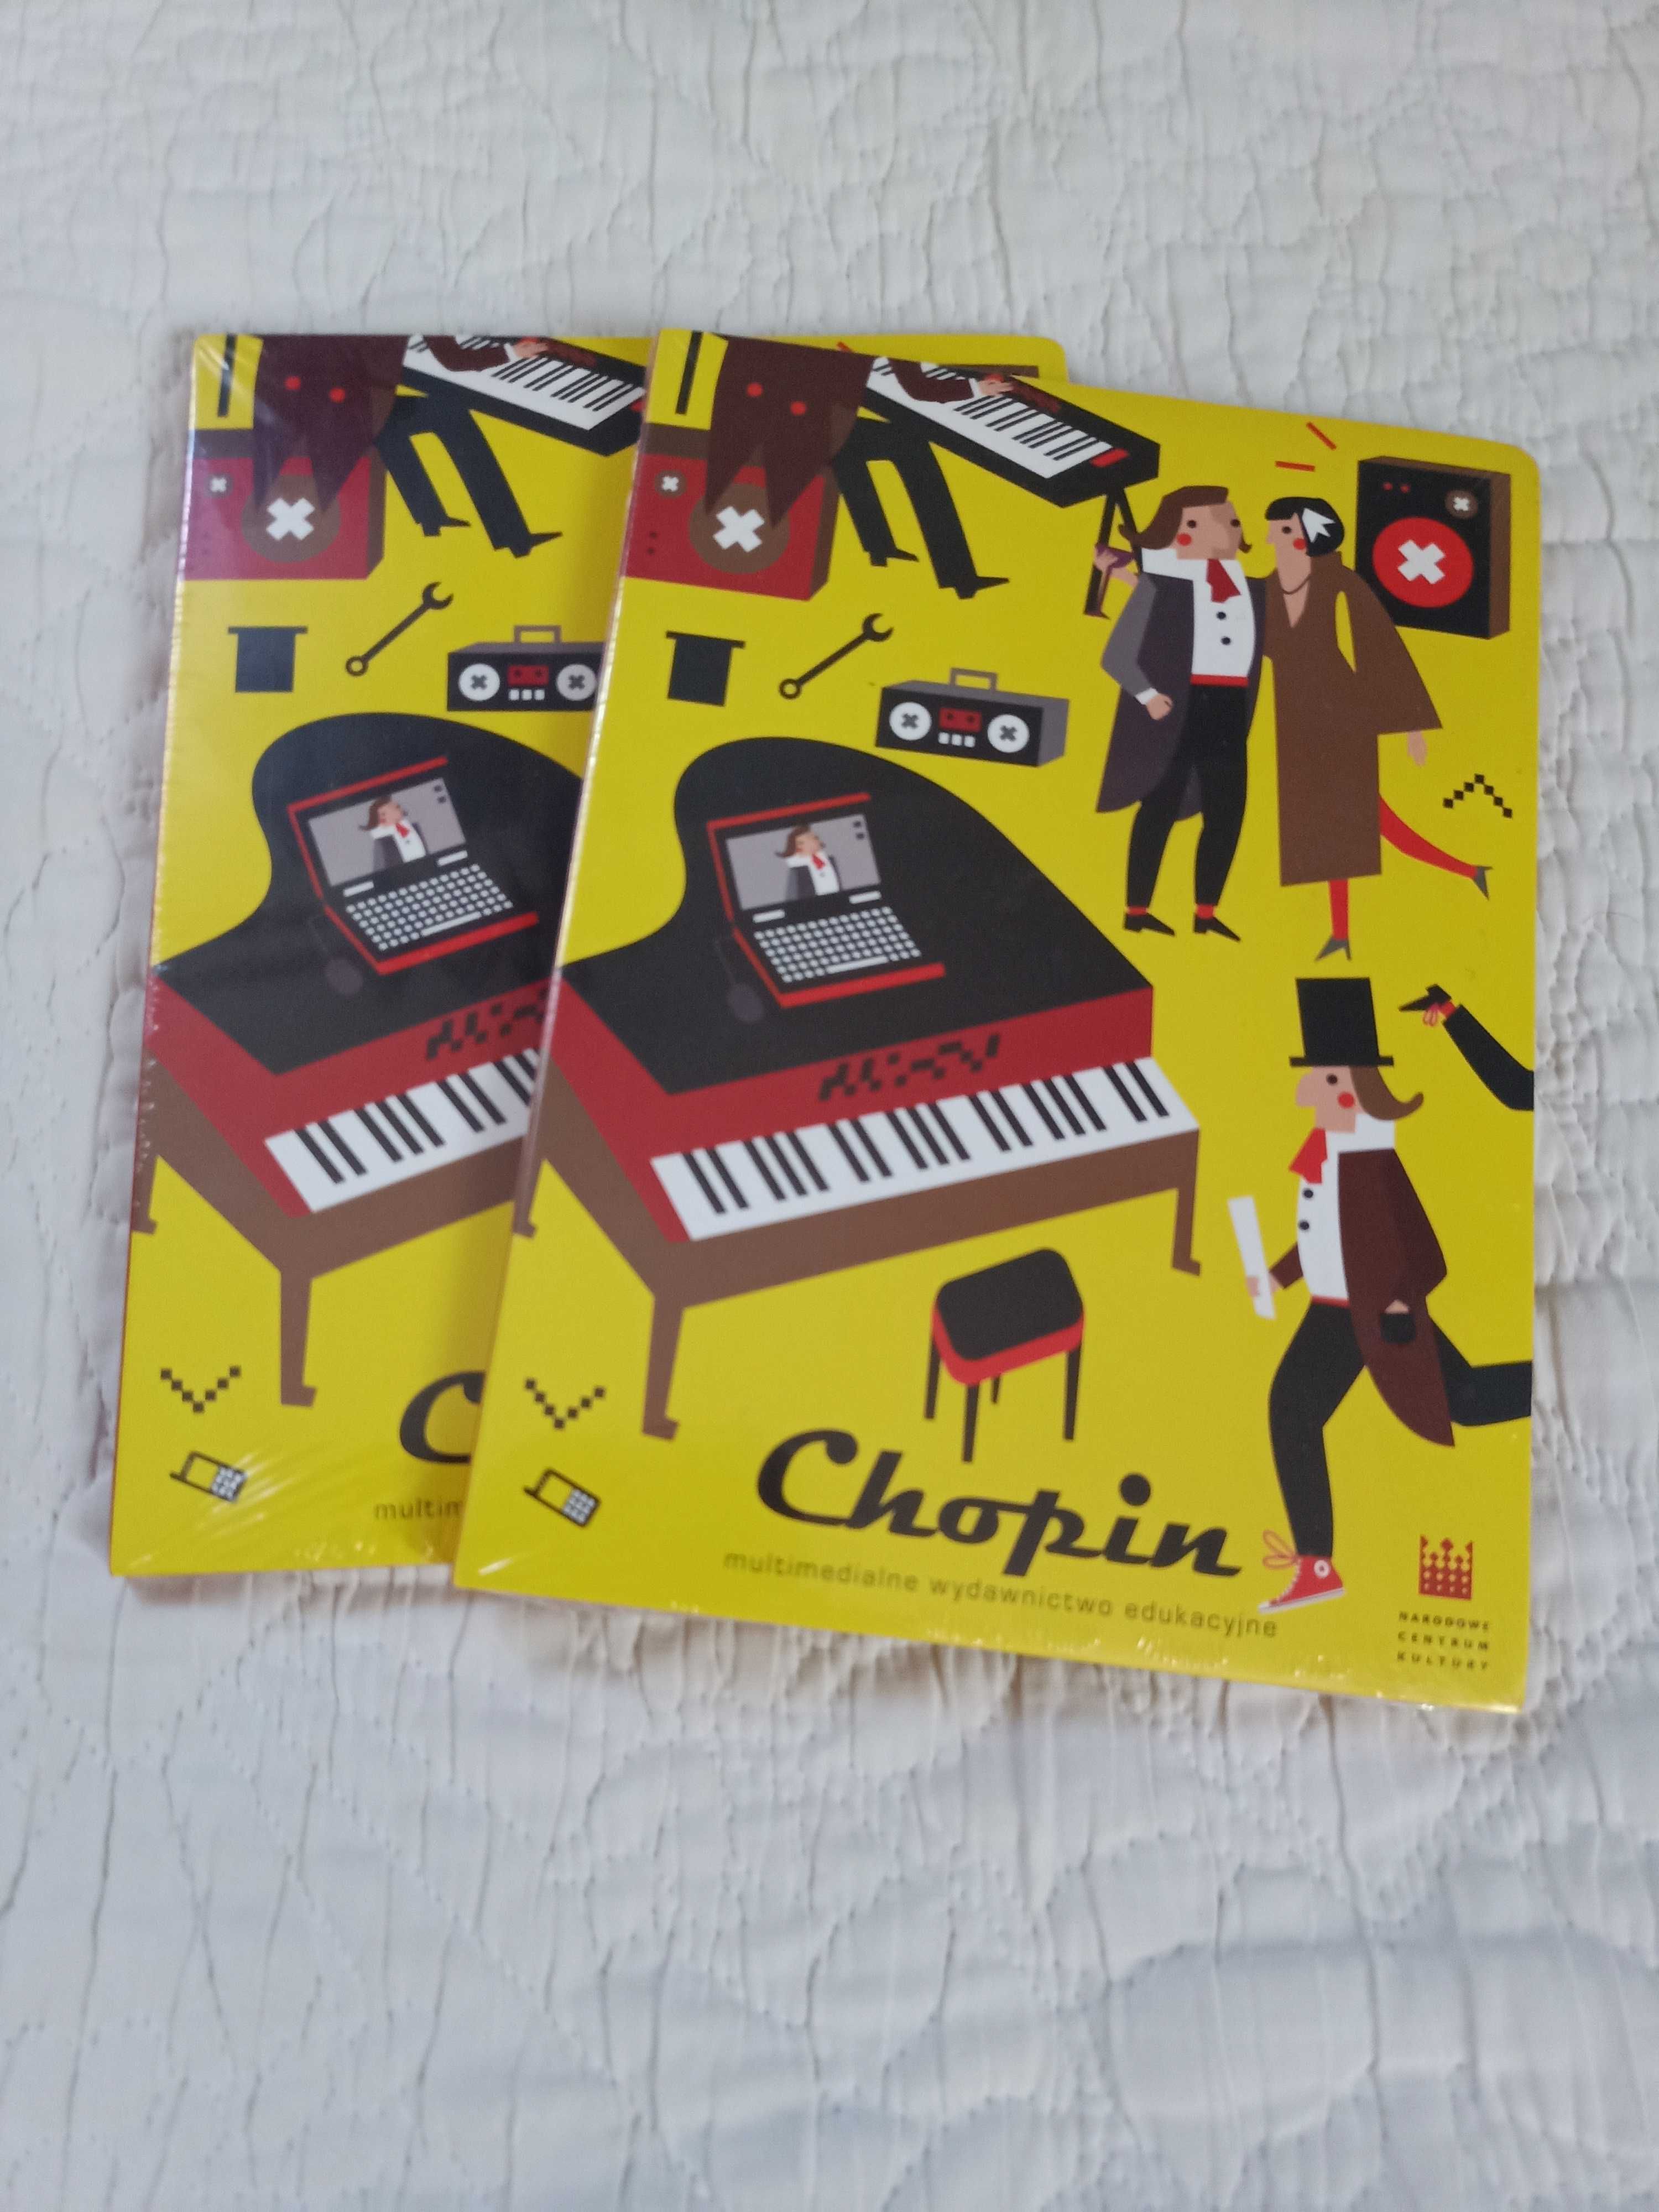 Chopin - multimedialne wydawnictwo edukacyjne - Płyta CD